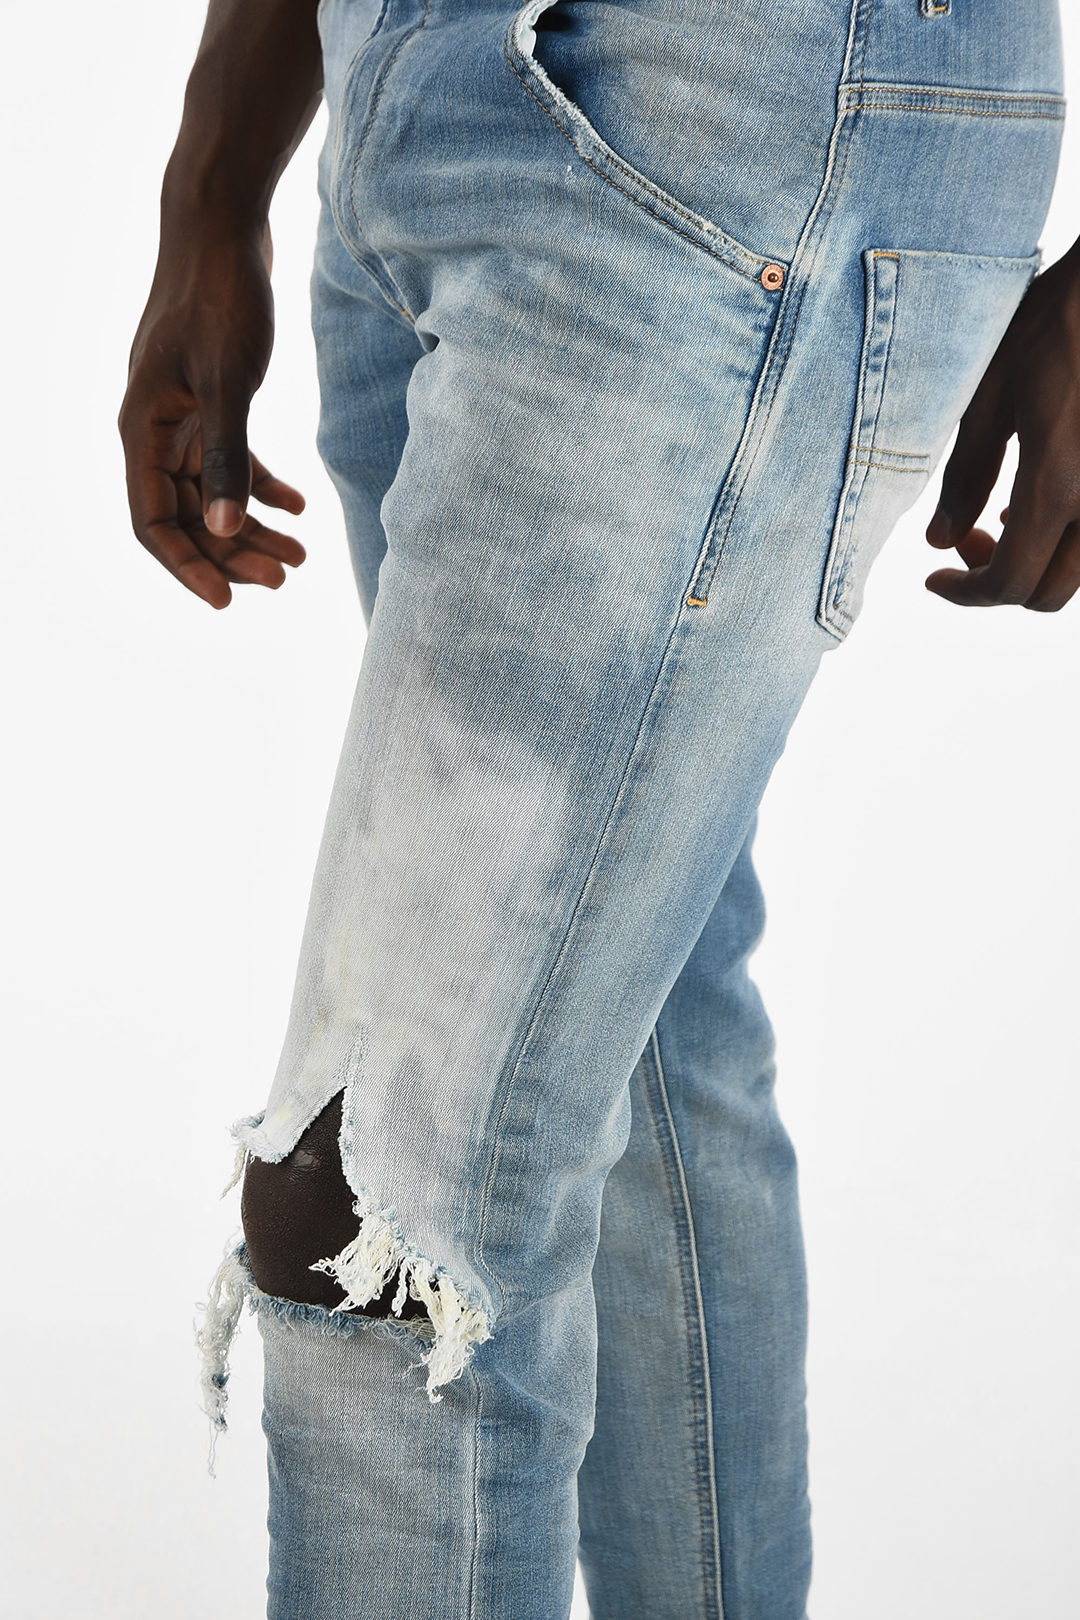 dommer Populær forvisning Diesel 18cm Vintage Effect KROOLEY-T Jogg Jeans men - Glamood Outlet